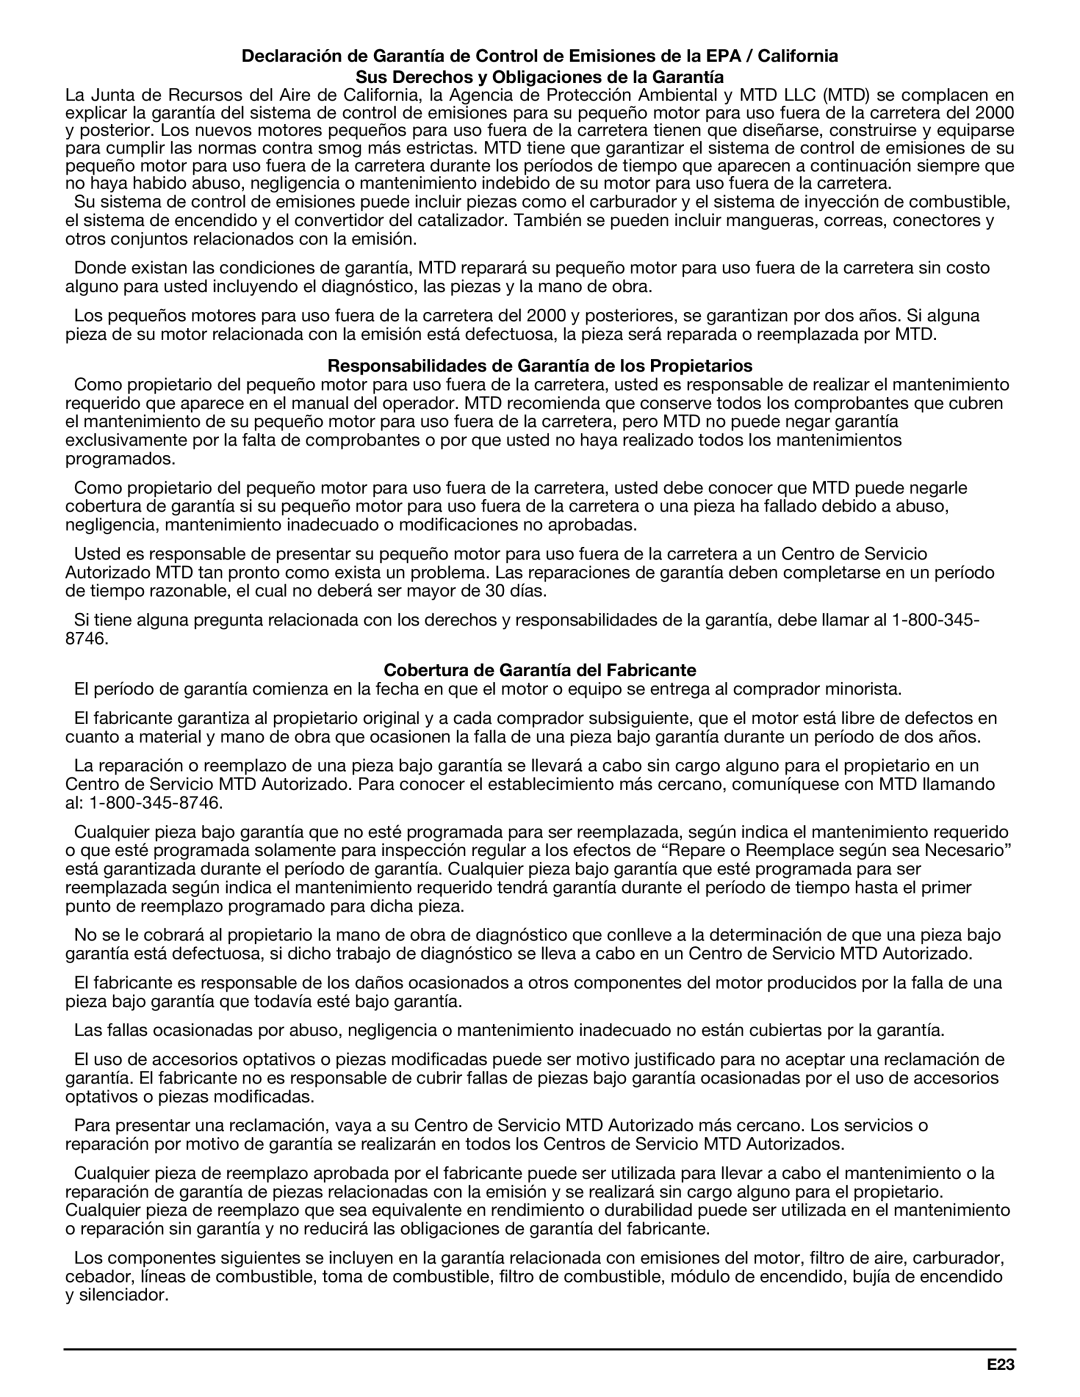 Bolens YM320BV manual Sus Derechos y Obligaciones de la Garantía, Responsabilidades de Garantía de los Propietarios 